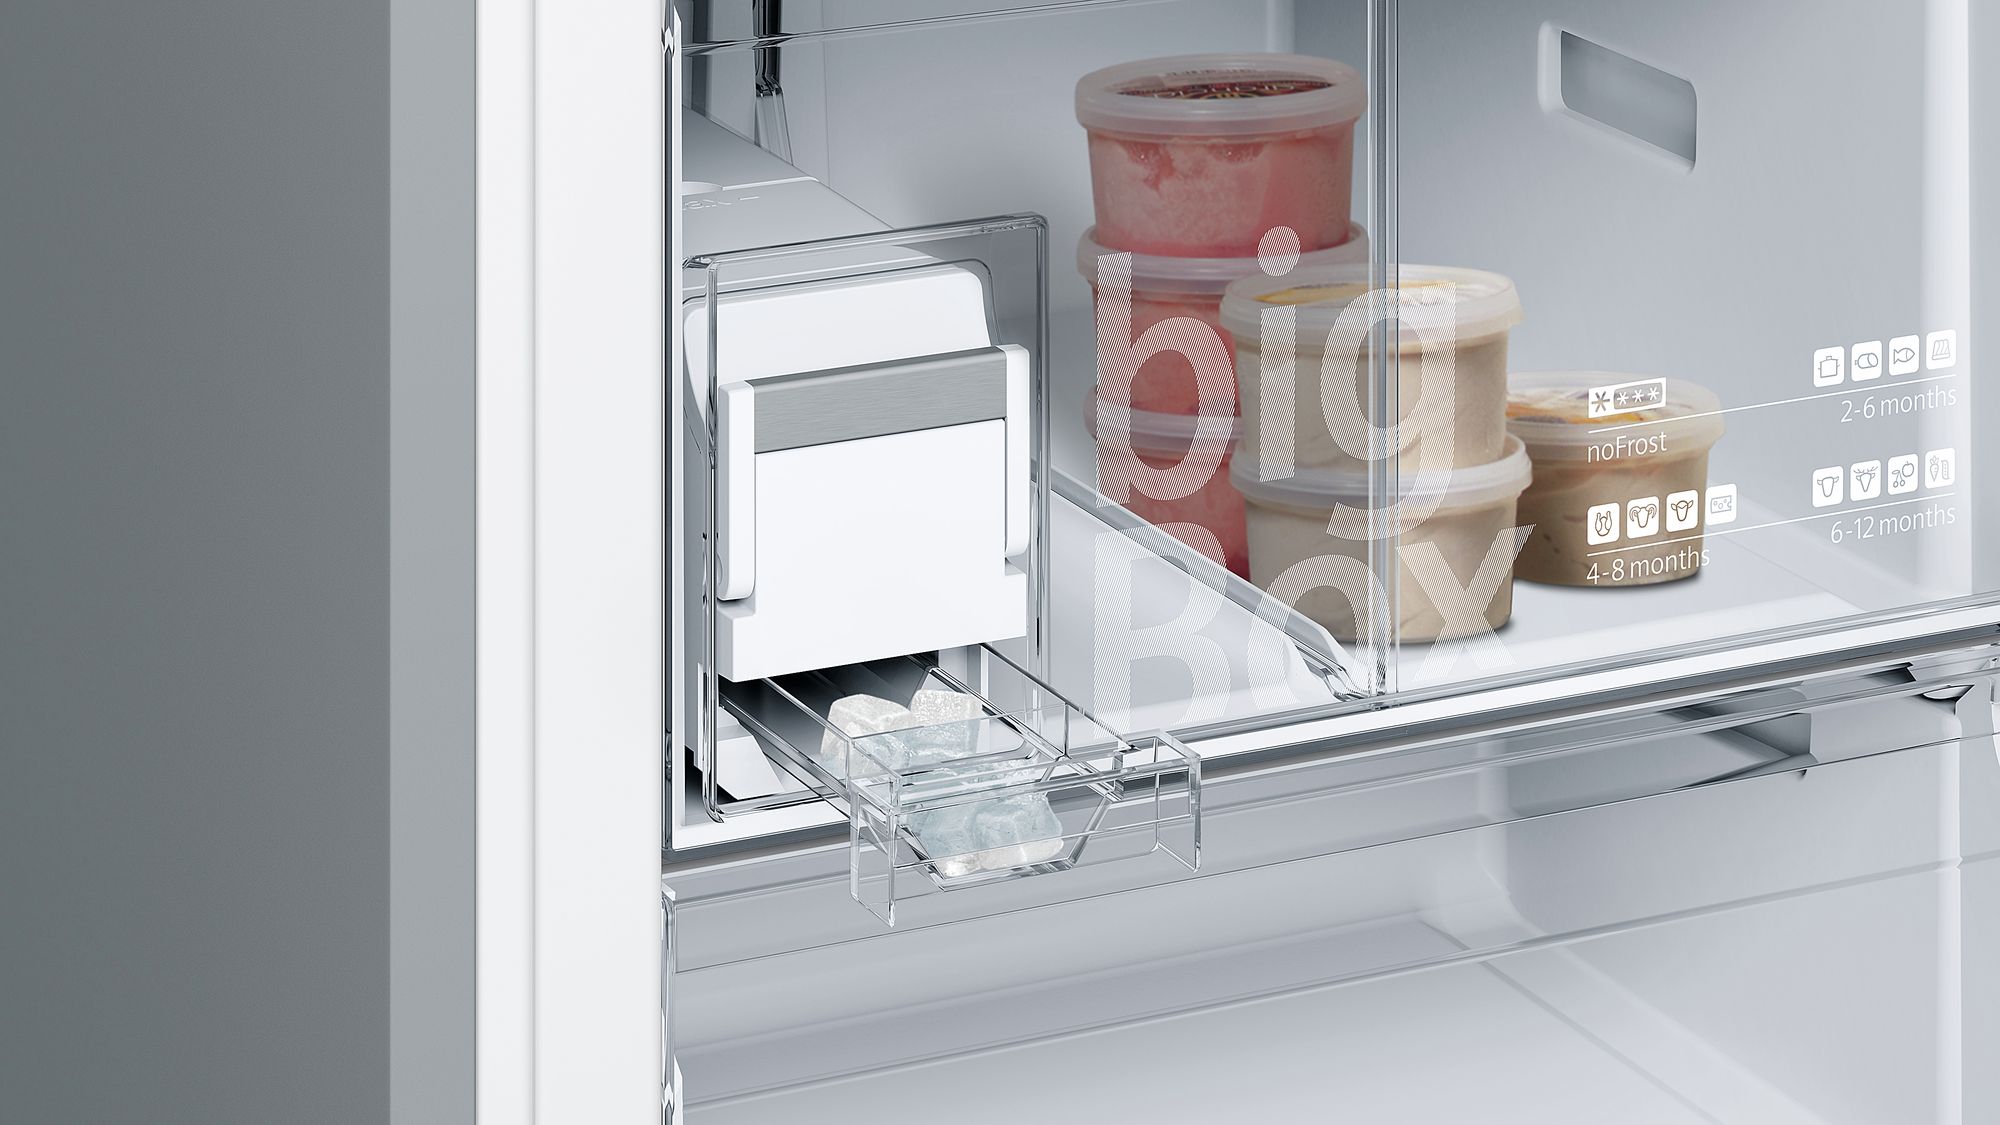 iQ500 Alttan Donduruculu Buzdolabı 70 cm, Kolay temizlenebilir Inox